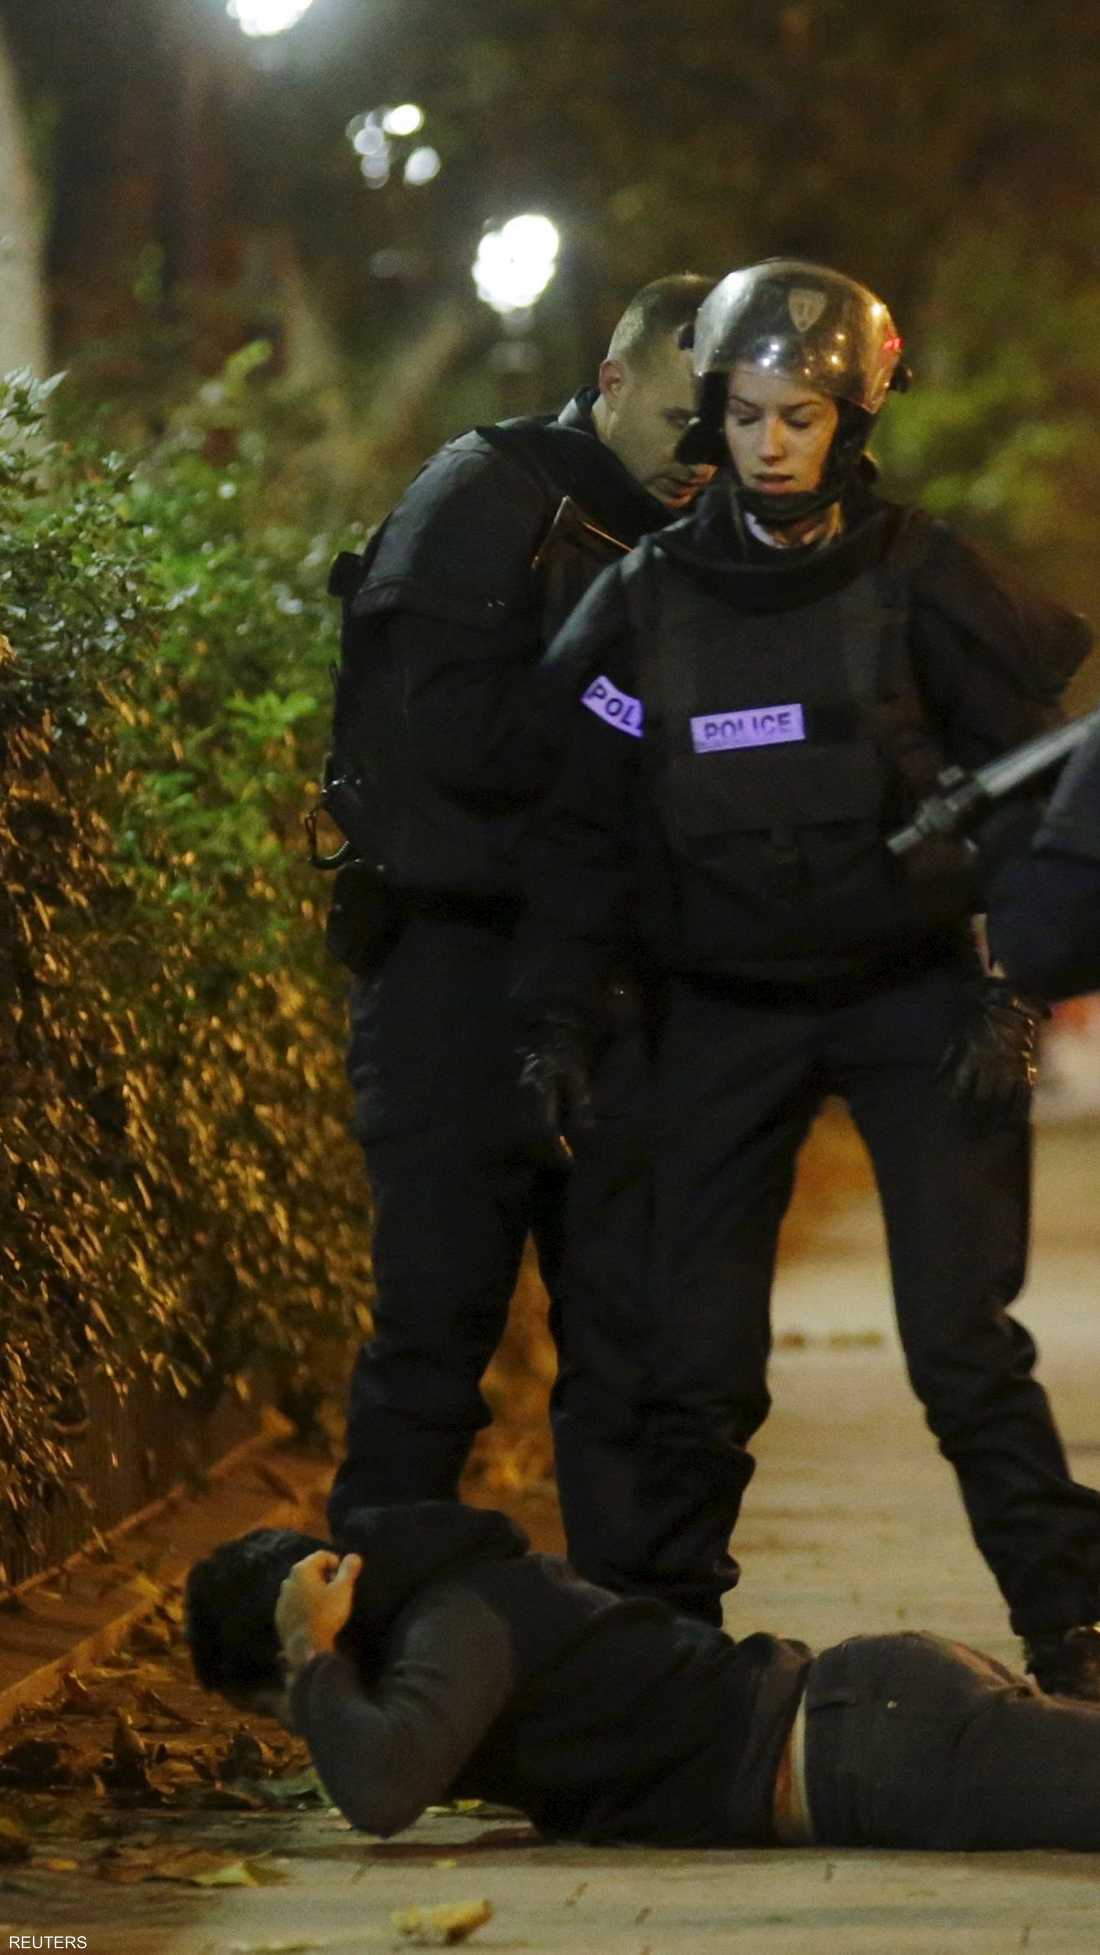 الشرطة الفرنسية تعتقل رجلا قرب مركز باتاكلان وتحاول التحقق من هويته